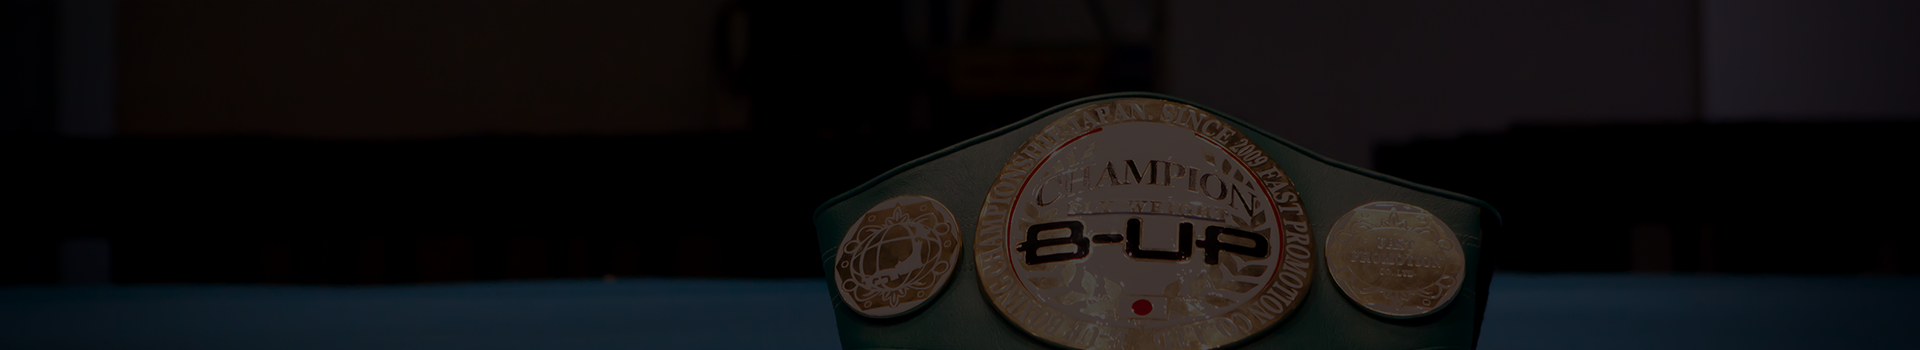 B-UP（ビーアップ）｜【年齢制限なし】元プロ・アマ問わずで格闘技経験ありの誰でも参加できるオシャレなボクシング大会です